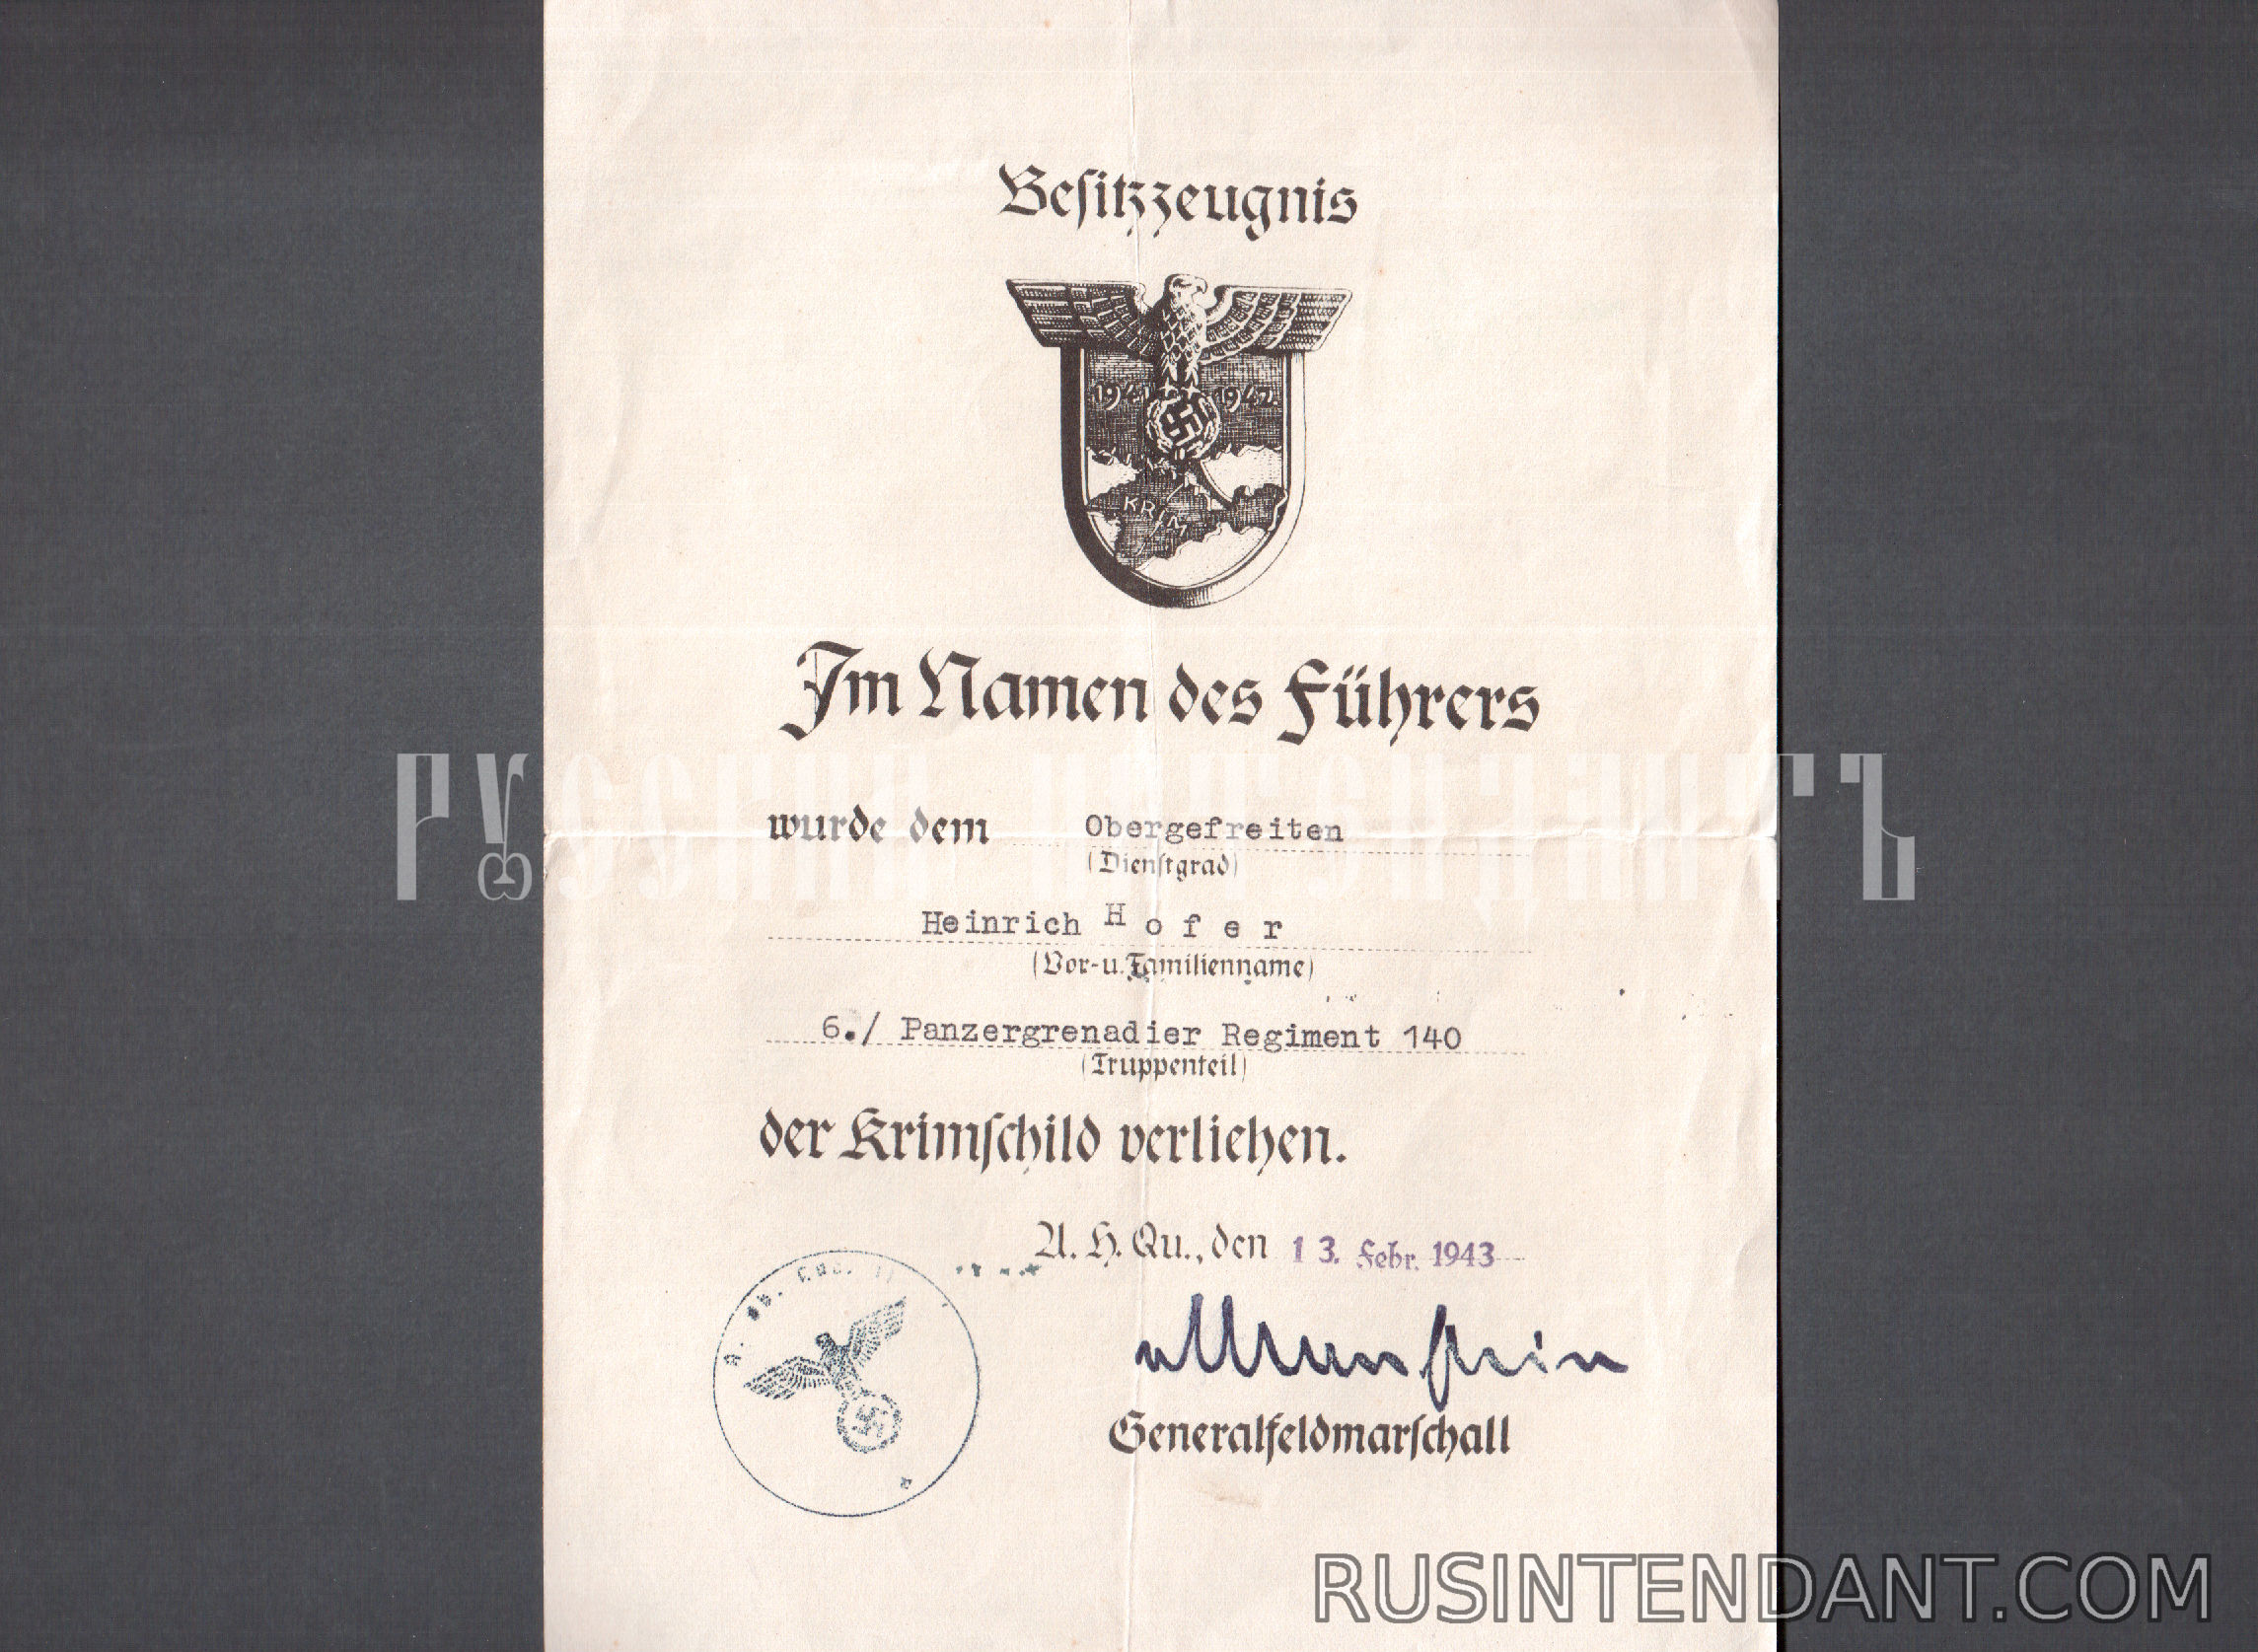 Фото 2: Группа наградных документов унтер-офицера Генриха Хофера 